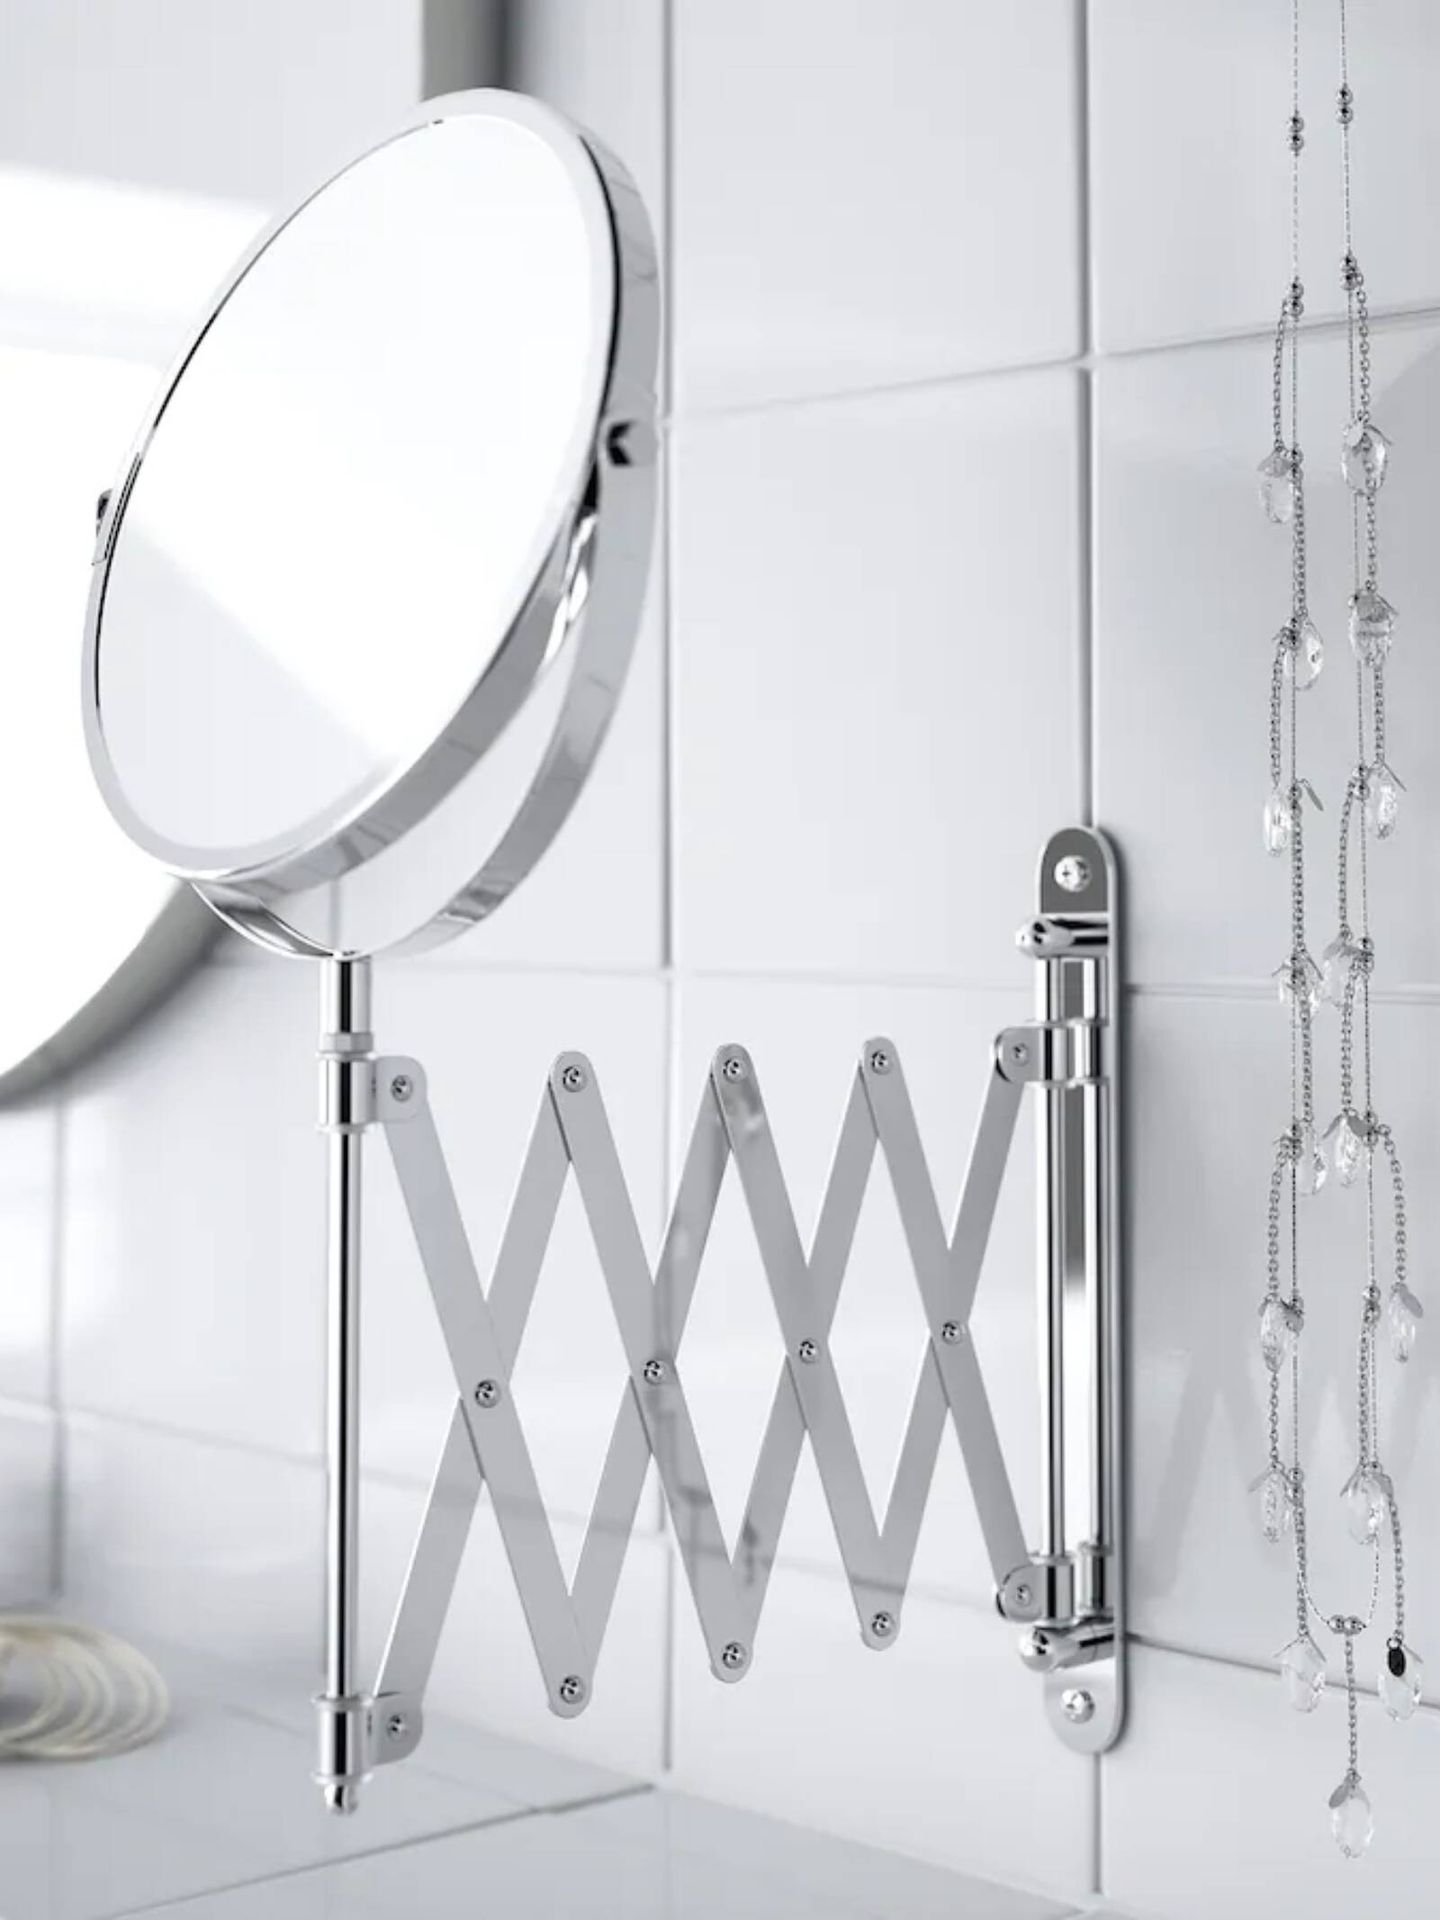 Espejos de Ikea para baños pequeños. (Cortesía)